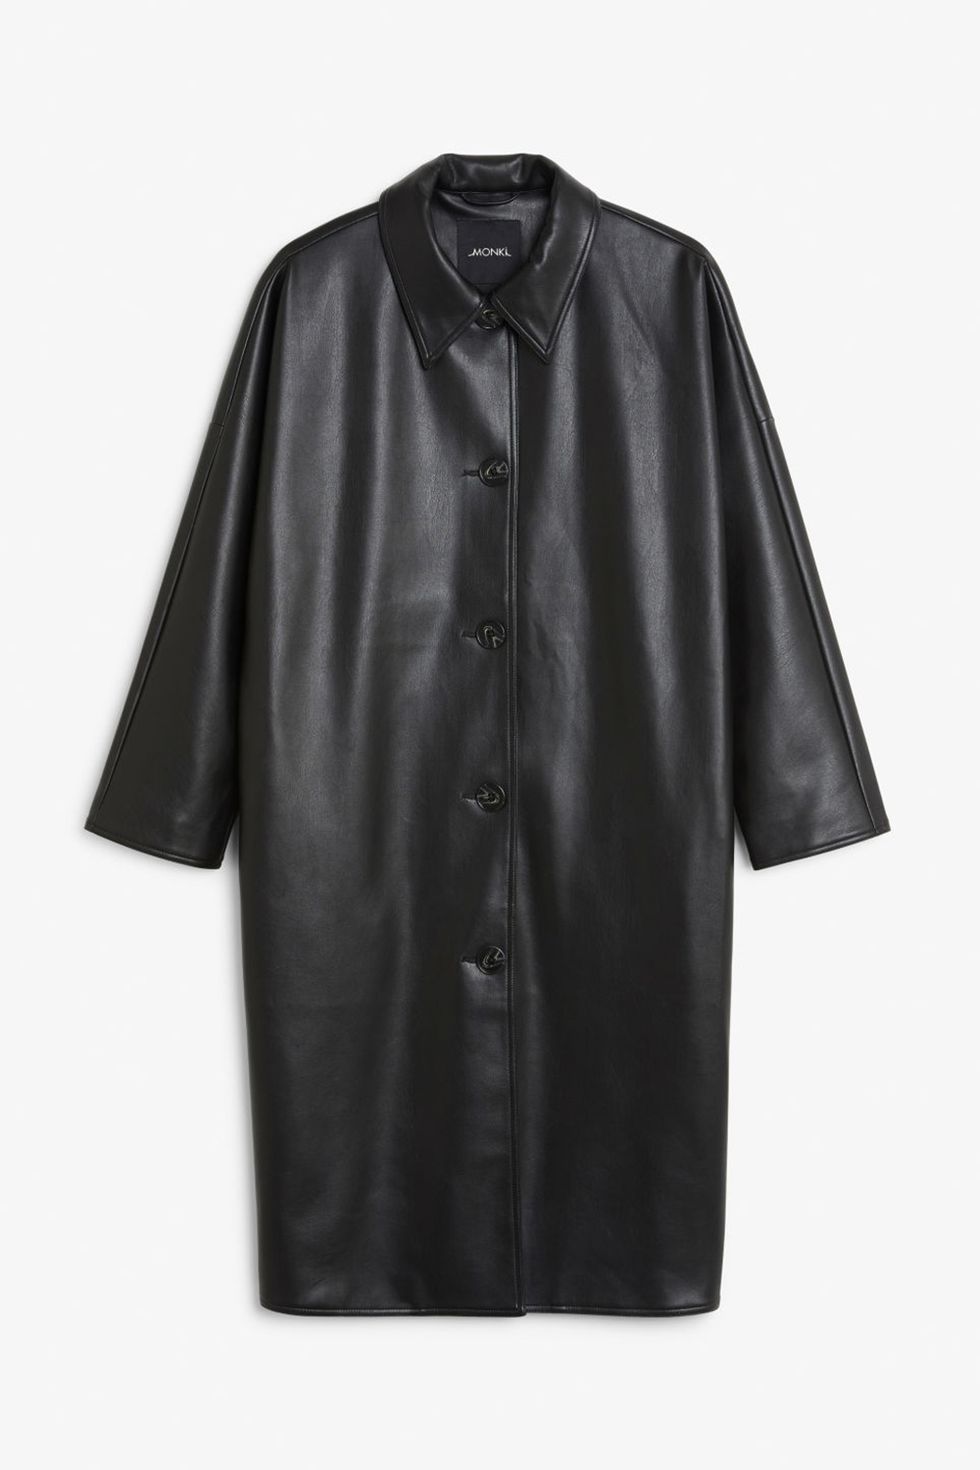 Clothing, Outerwear, Sleeve, Jacket, Leather, Coat, Collar, Leather jacket, 